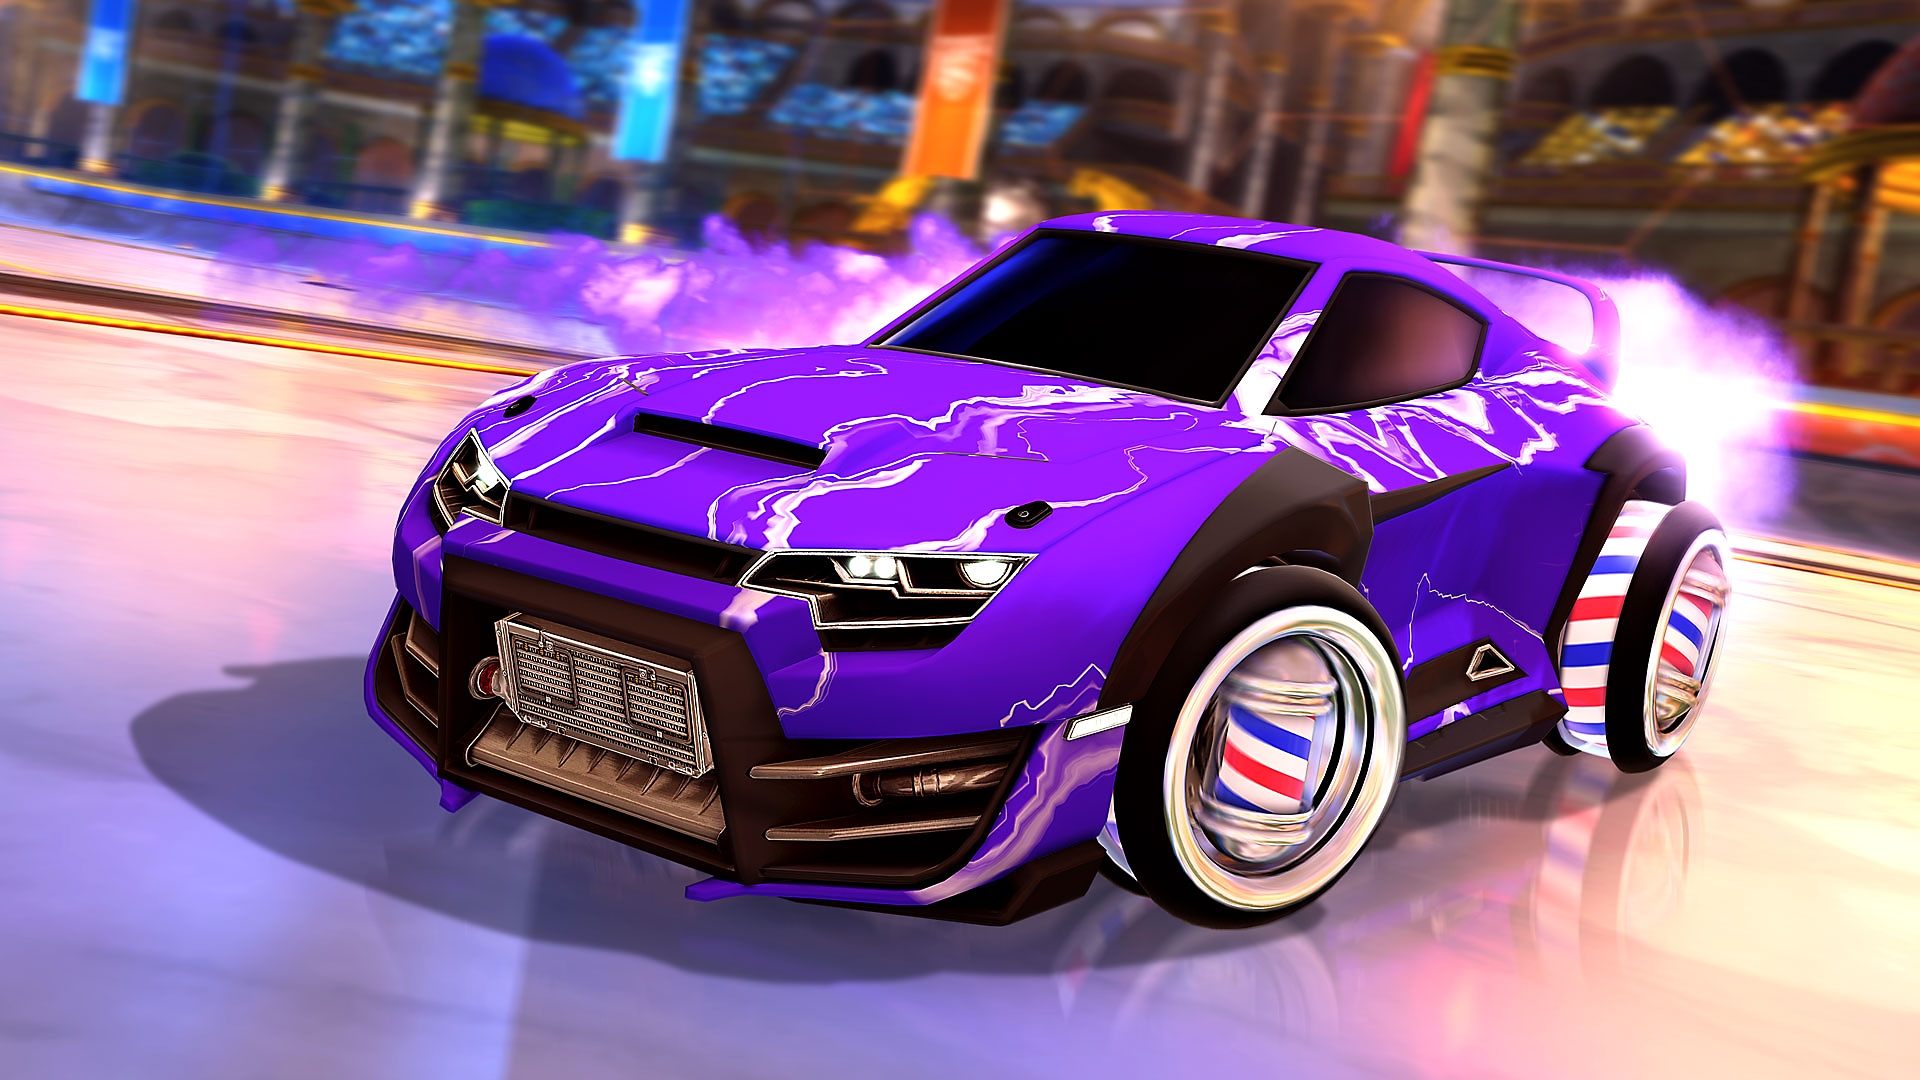 Screenshot von Rocket League, der ein lila Auto zeigt